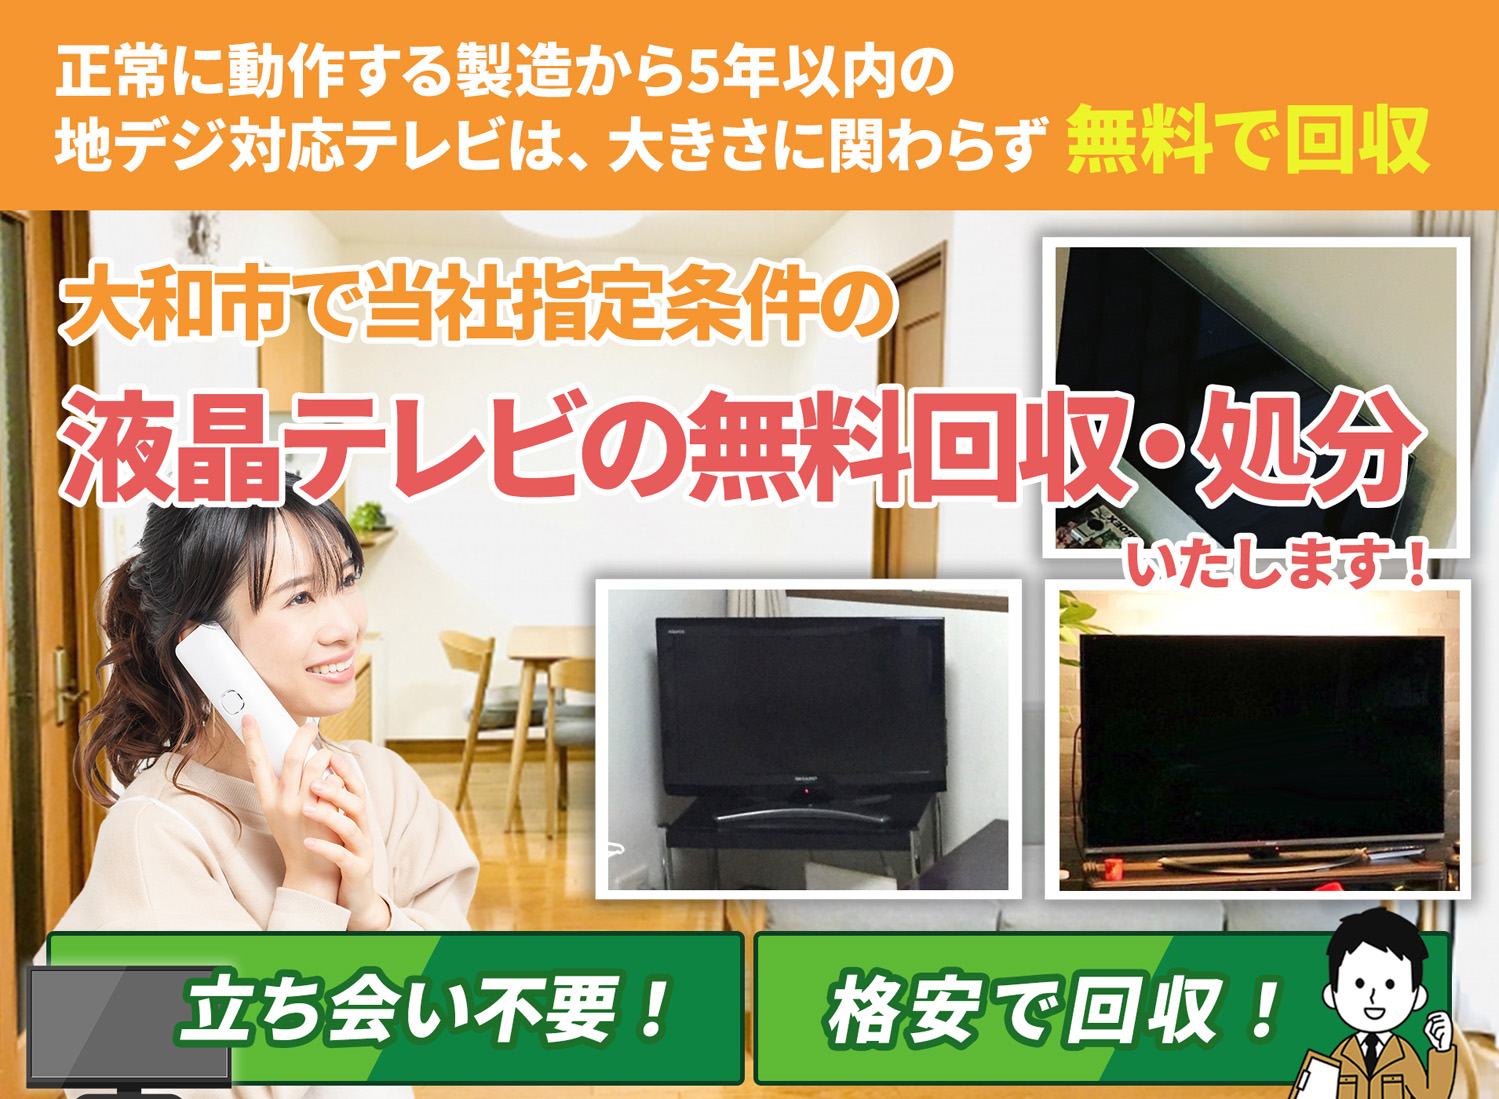 大和市のサービスで地域一番を目指す液晶テレビ無料回収処分隊の液晶テレビ無料回収サービス